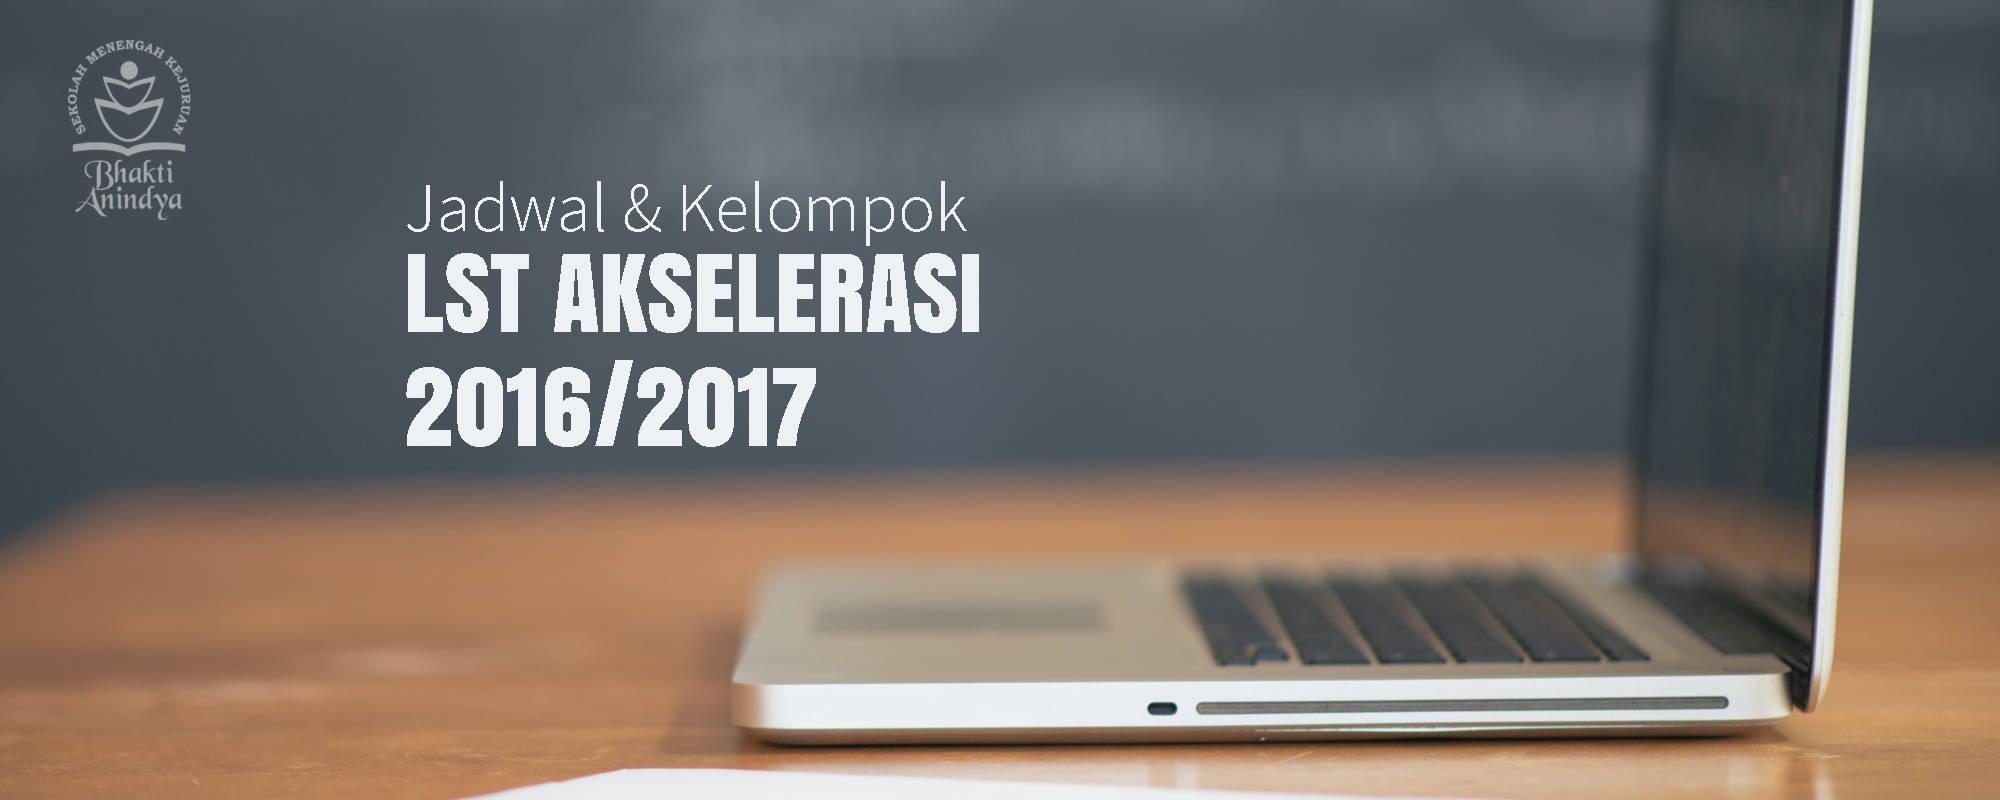 Jadwal & Kelompok Life Skill Training Web Design SMK Bhakti Anindya Tangerang